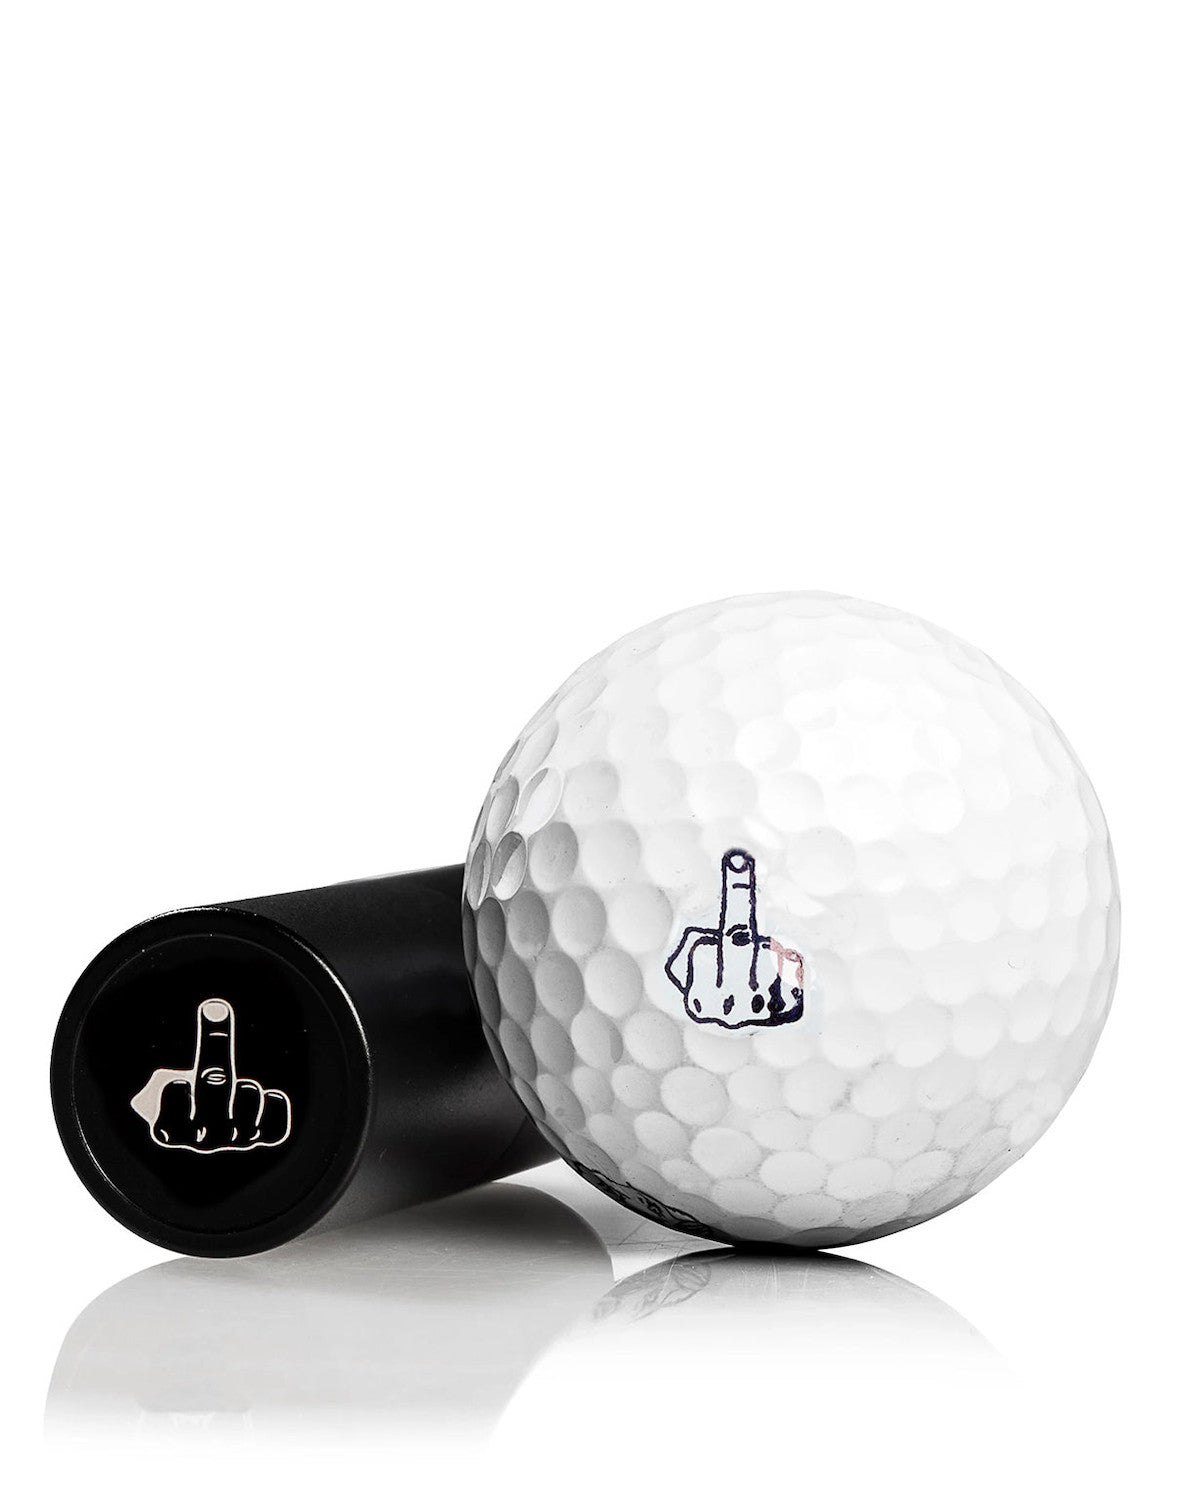 Ballmarker đánh dấu bóng - Pins and Aces - Duy Nhất tại Top One Golf